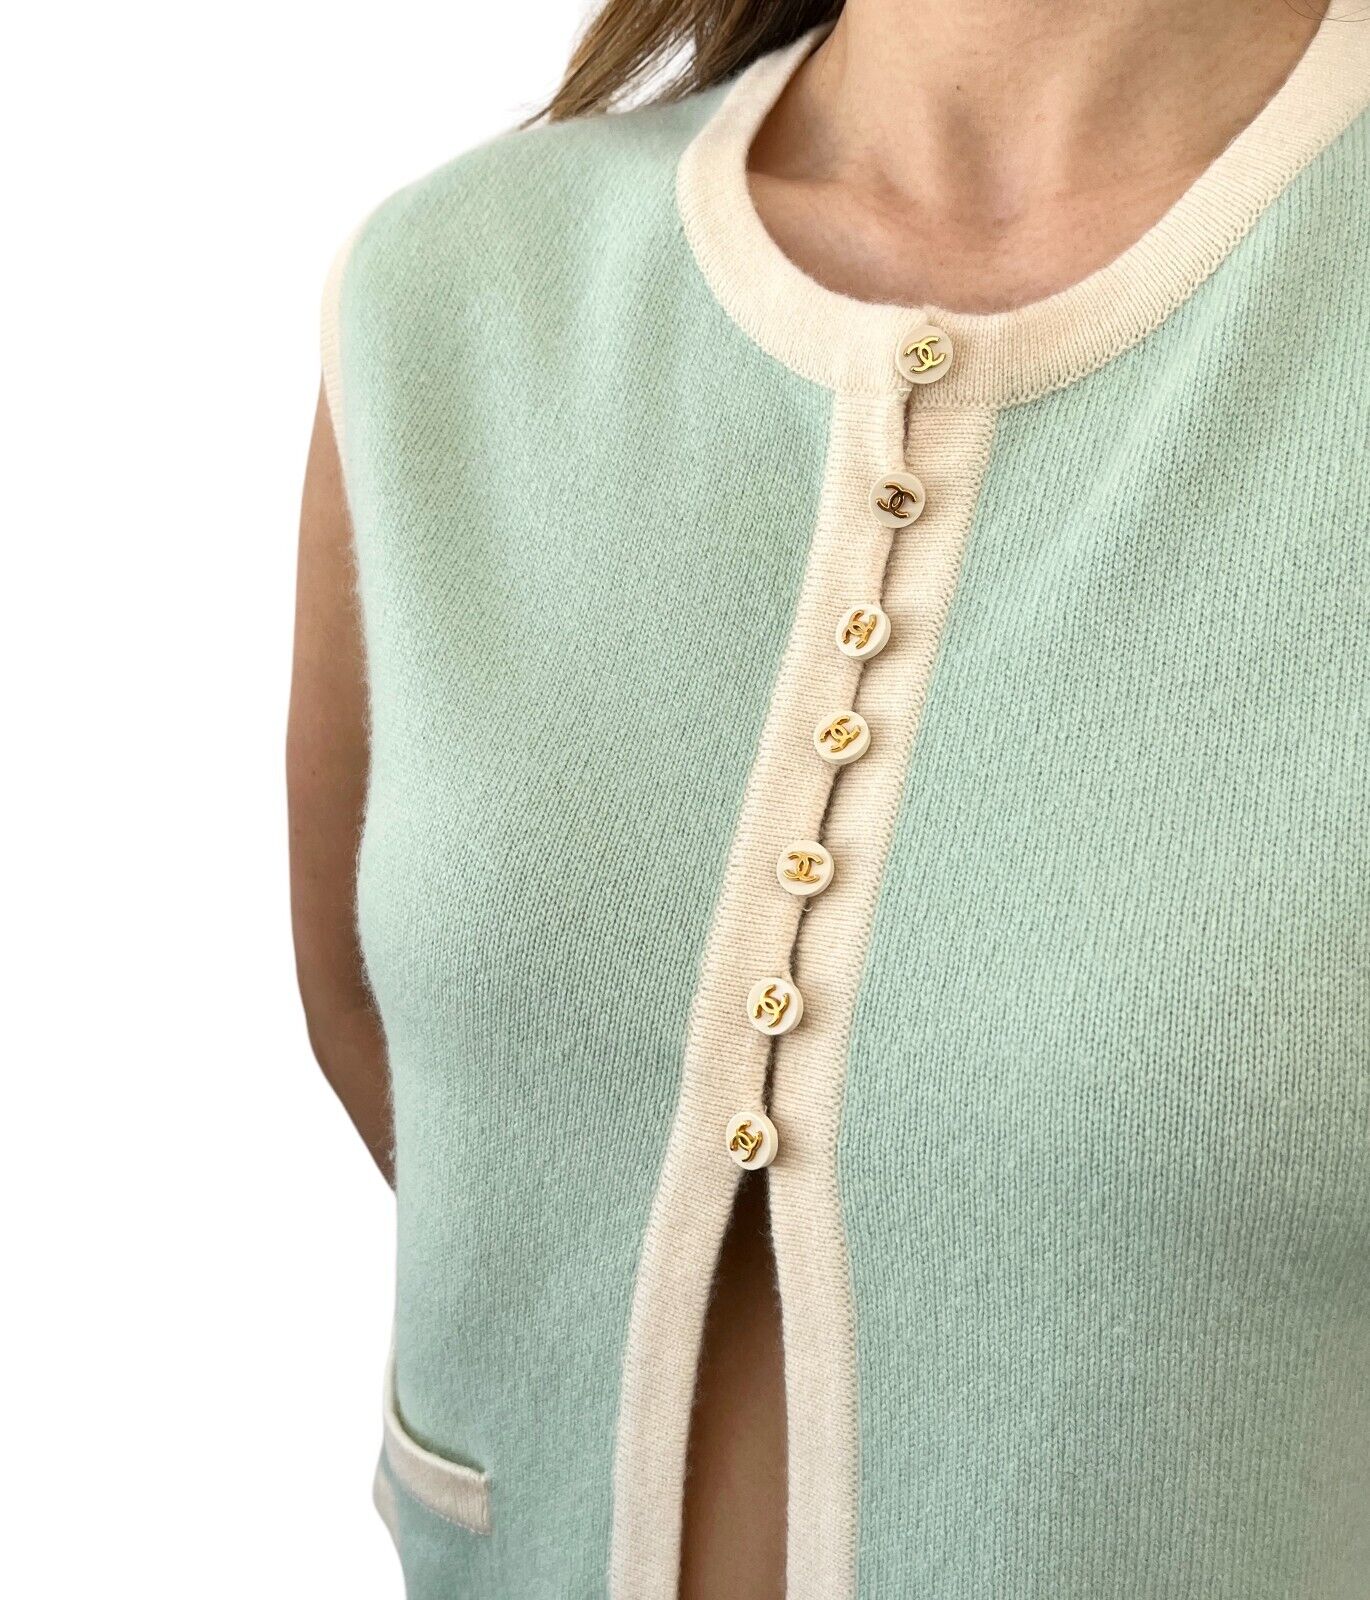 CHANEL Vintage 96C CC Mark Button Knit Vest #40 Sweater Mint Cashmere Rank AB+